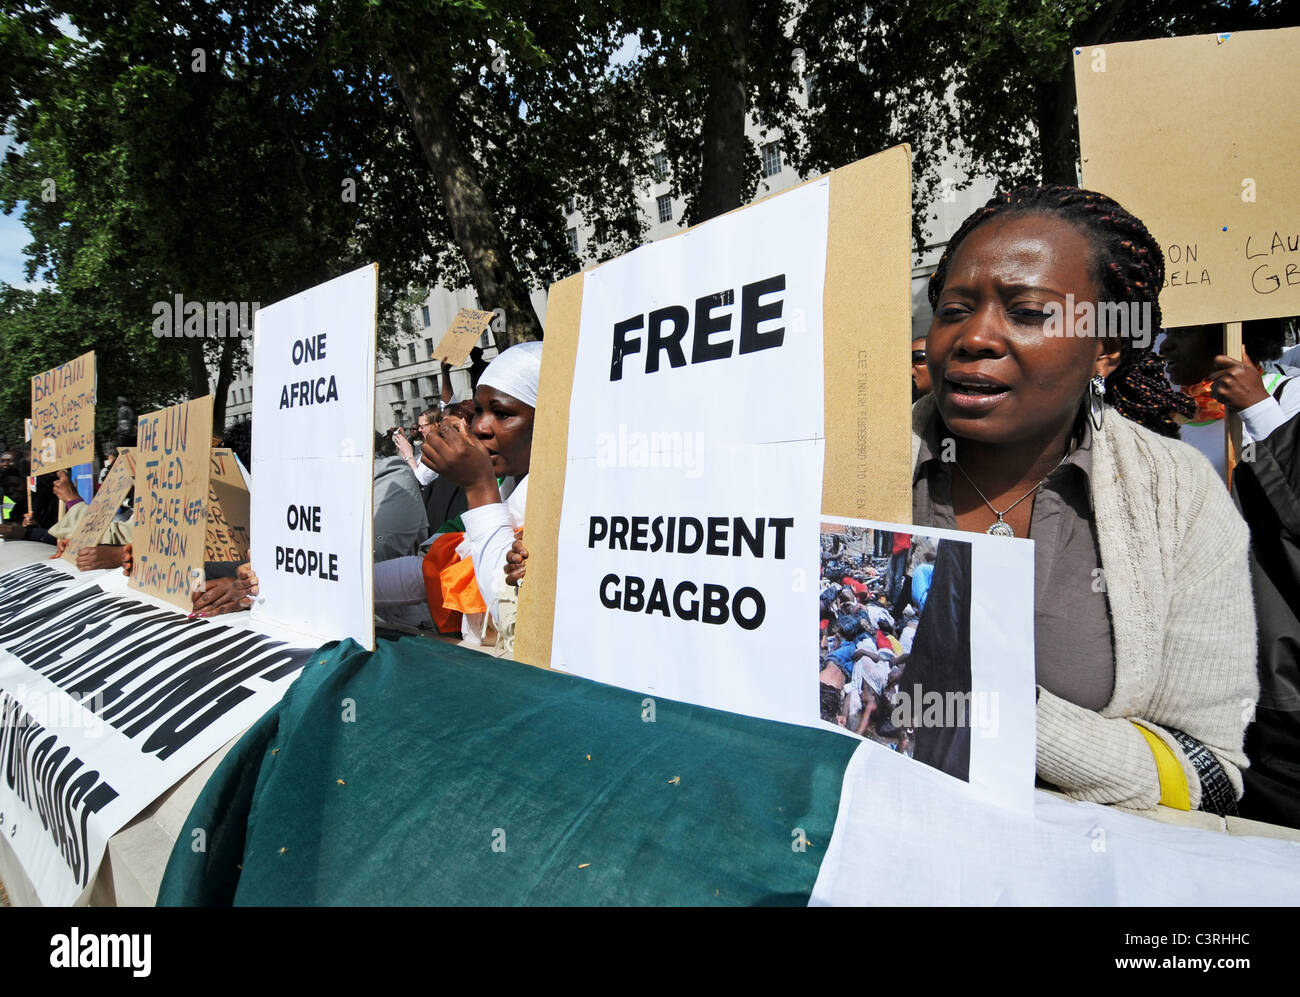 Le Président Gbagbo pro français protester contre l'ingérence de l'ONU et de l'élection, l'arrimage et la création d'une guerre civile en Côte d'Ivoire Banque D'Images